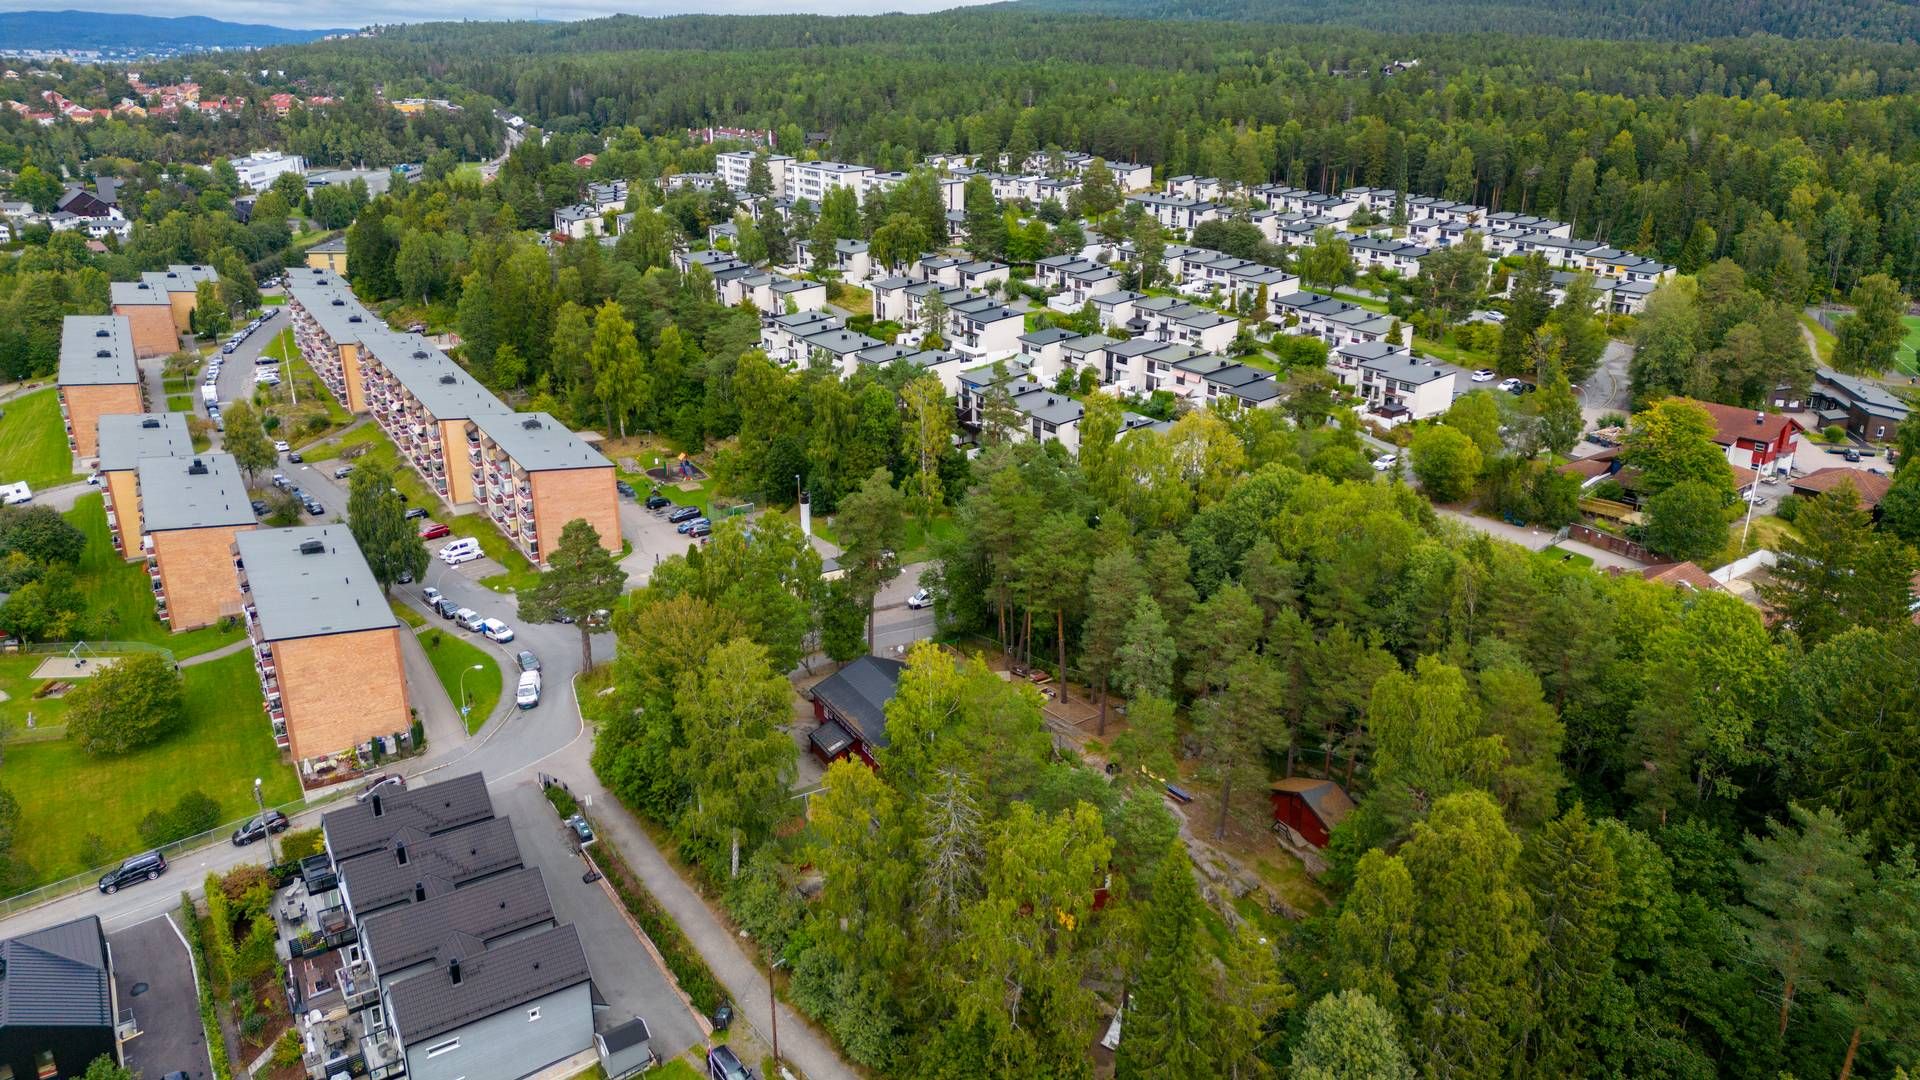 ENDRINGER: Regjeringen vil foreslå endringer i både plan- og bygningsloven og husleieloven for å sikre flere boliger til flyktninger. | Foto: Håkon Mosvold Larsen / NTB